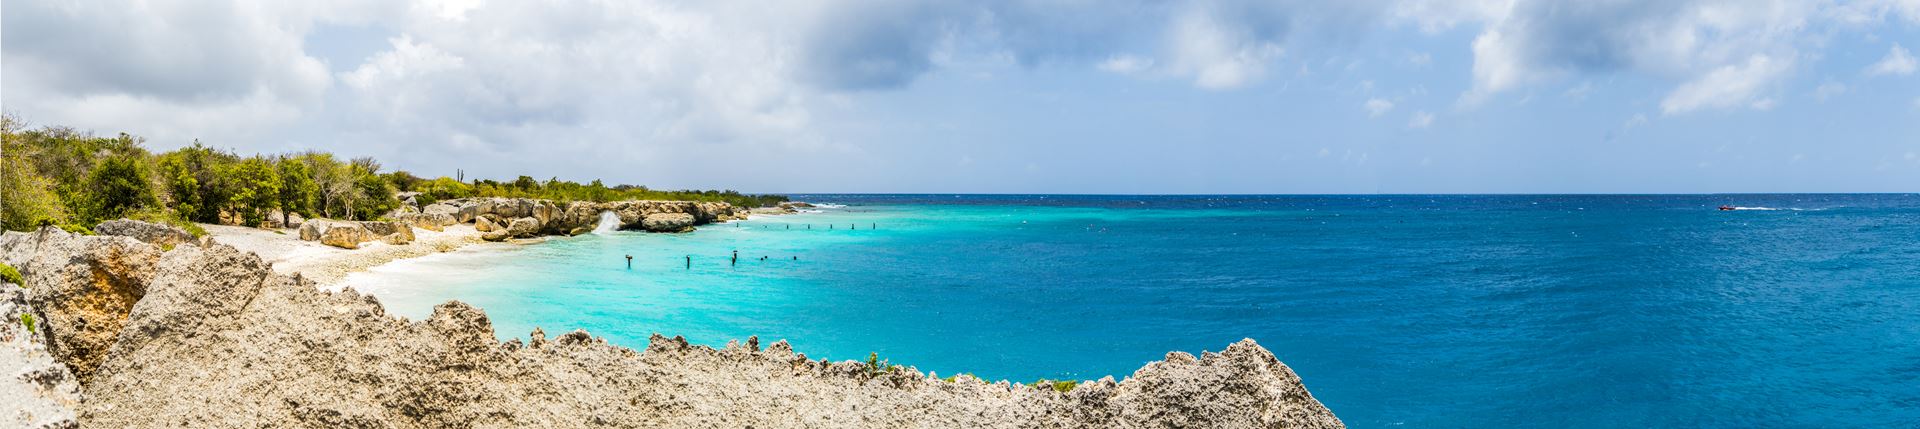 Vliegreis Curaçao